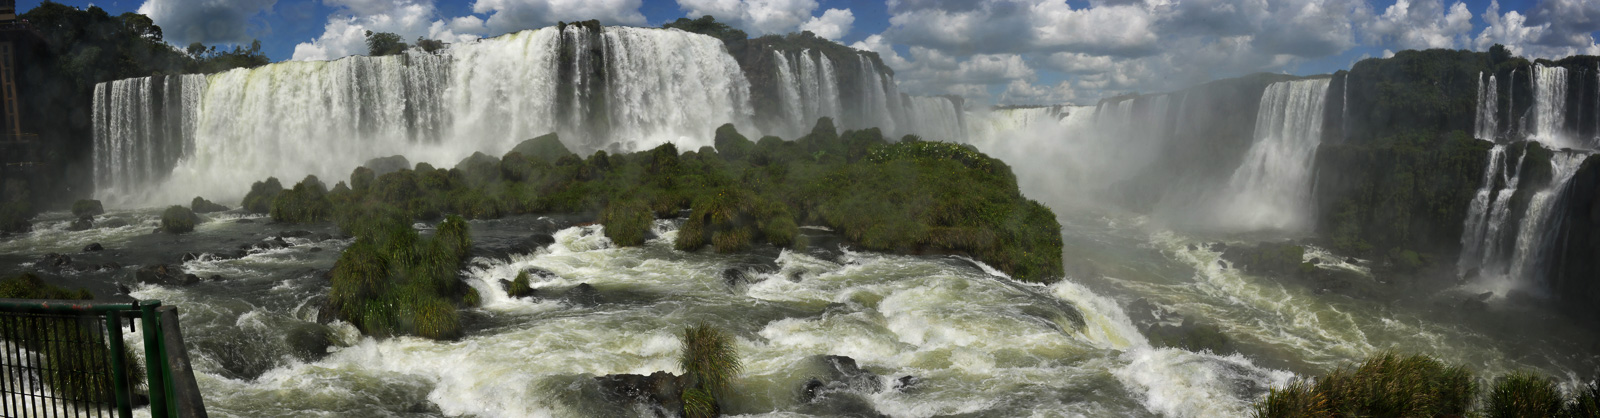 Cataratas del Iguazu [28 mm, 1/125 Sek. bei f / 18, ISO 250]